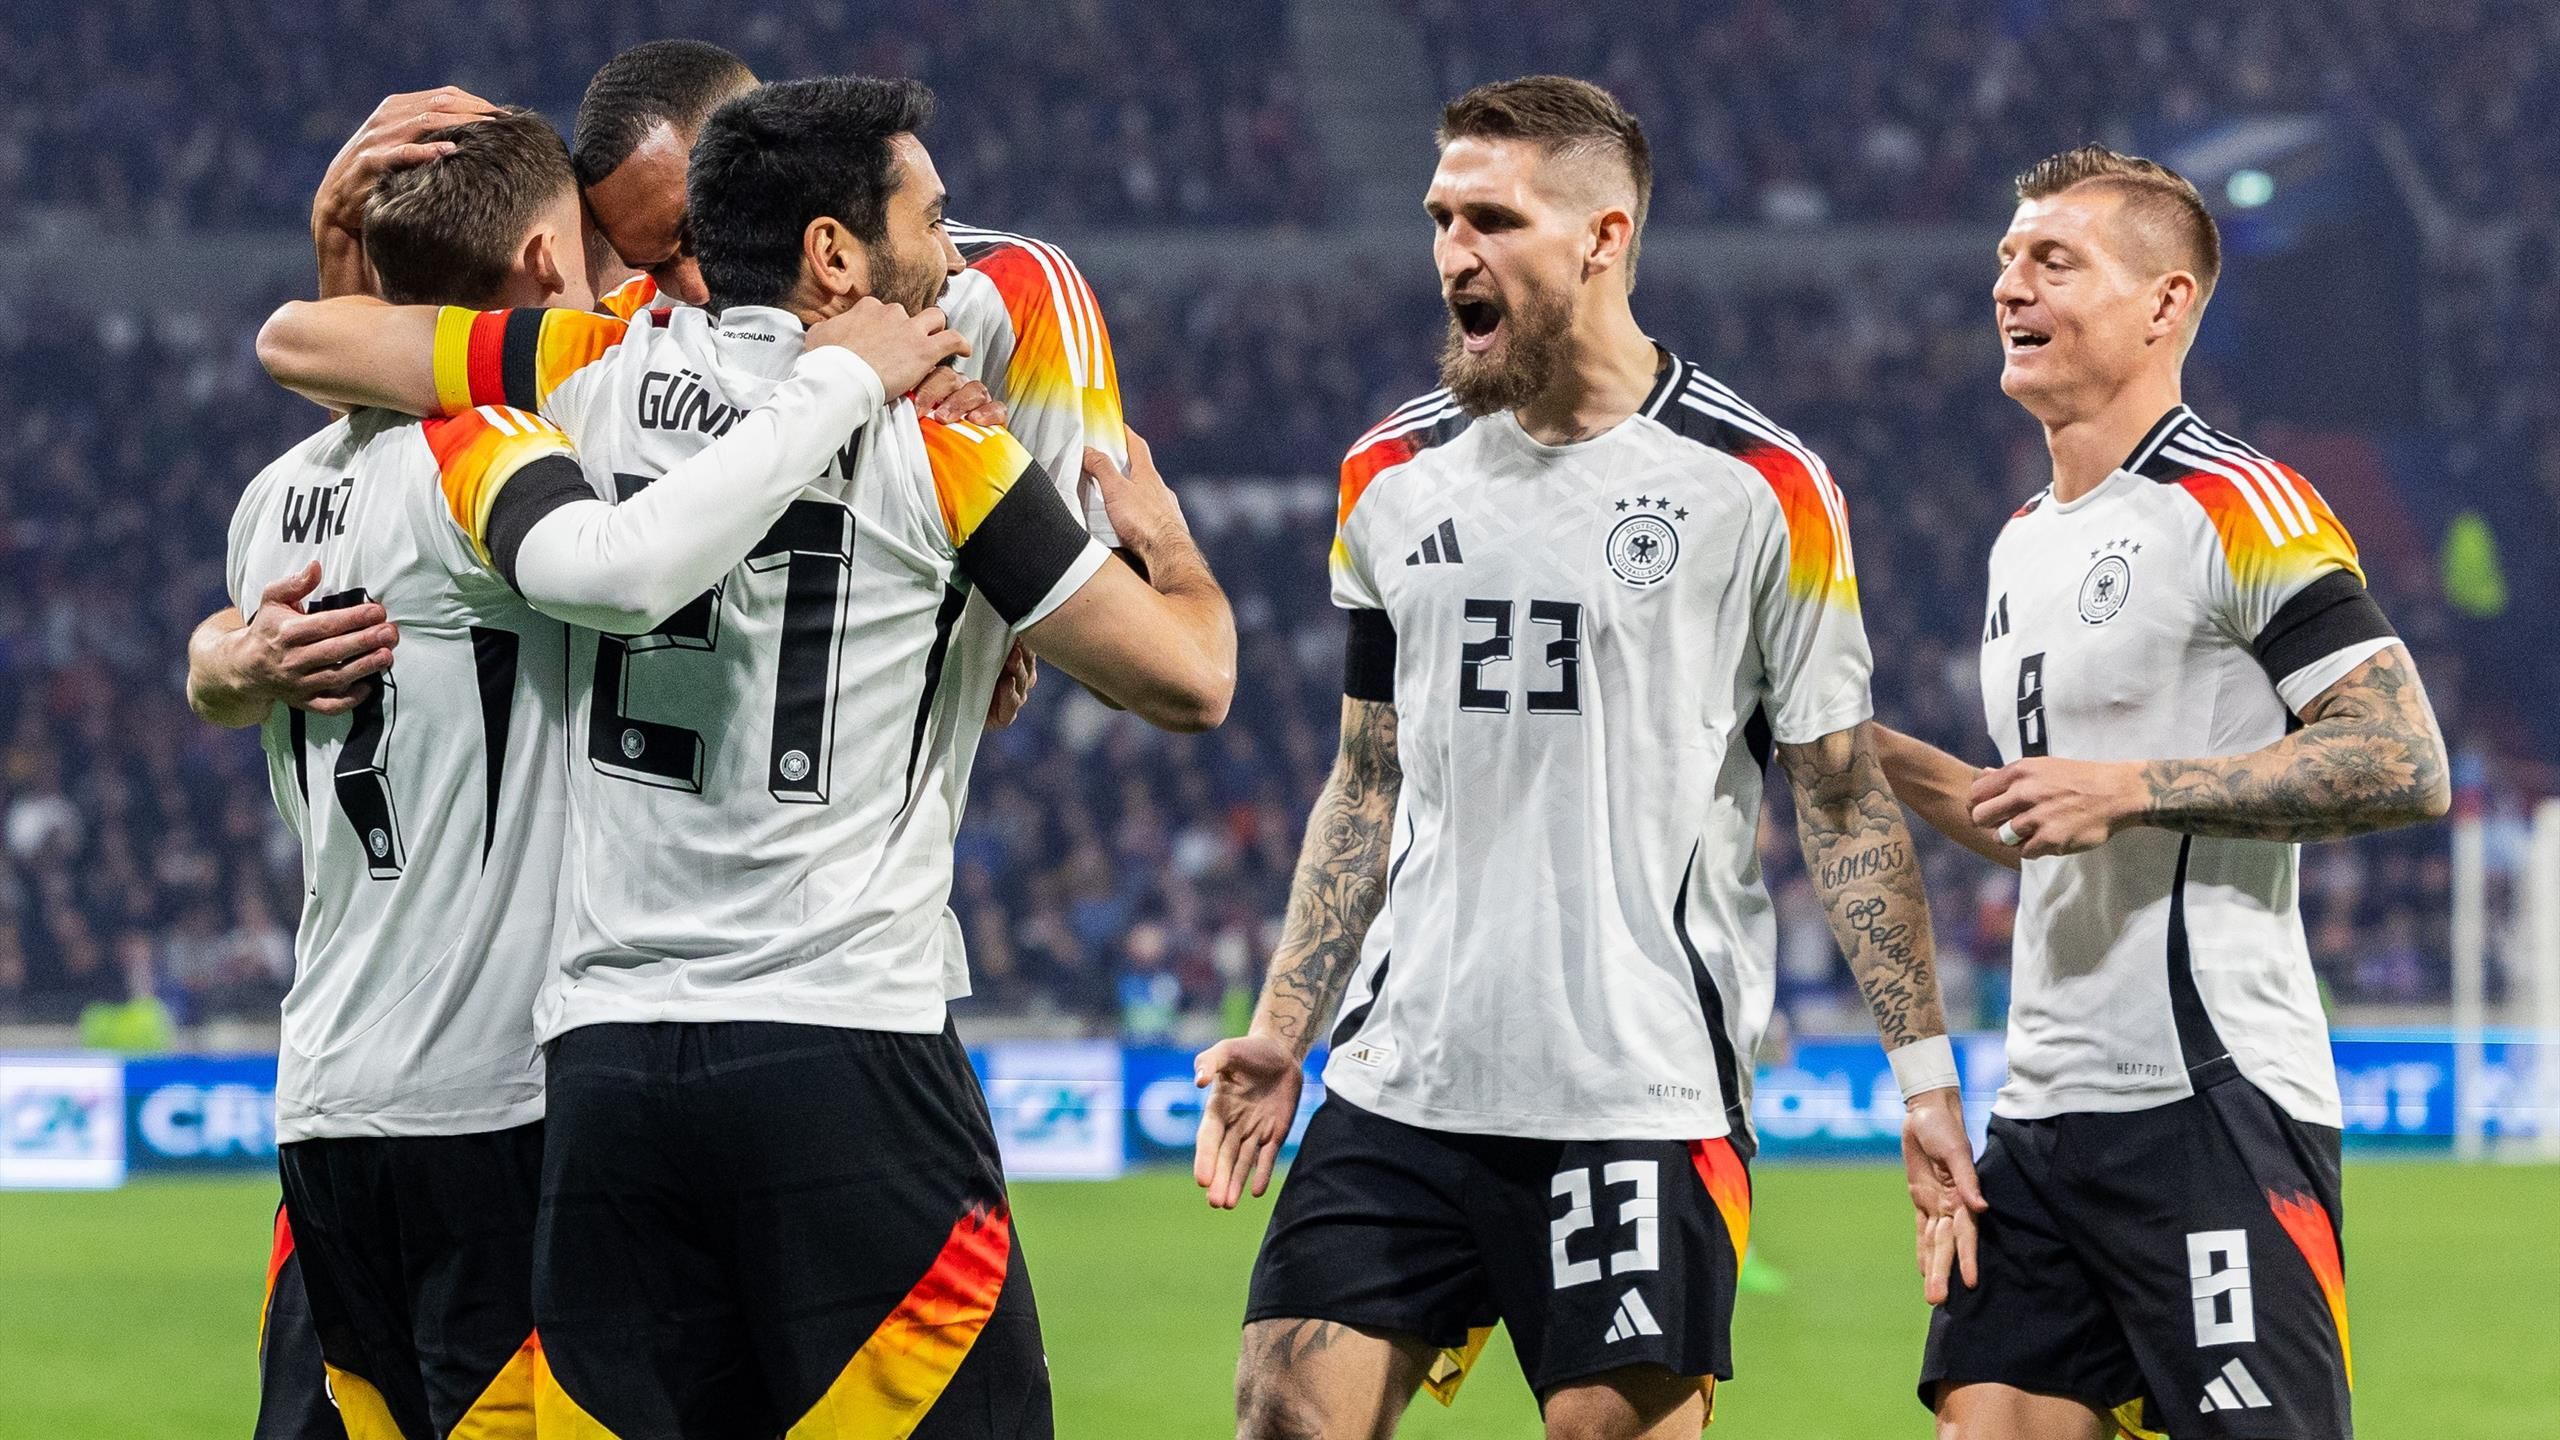 Duitsland – Nederland Live TV, Live Stream en Tape – Uitzending van het nationale team in de internationale wedstrijd